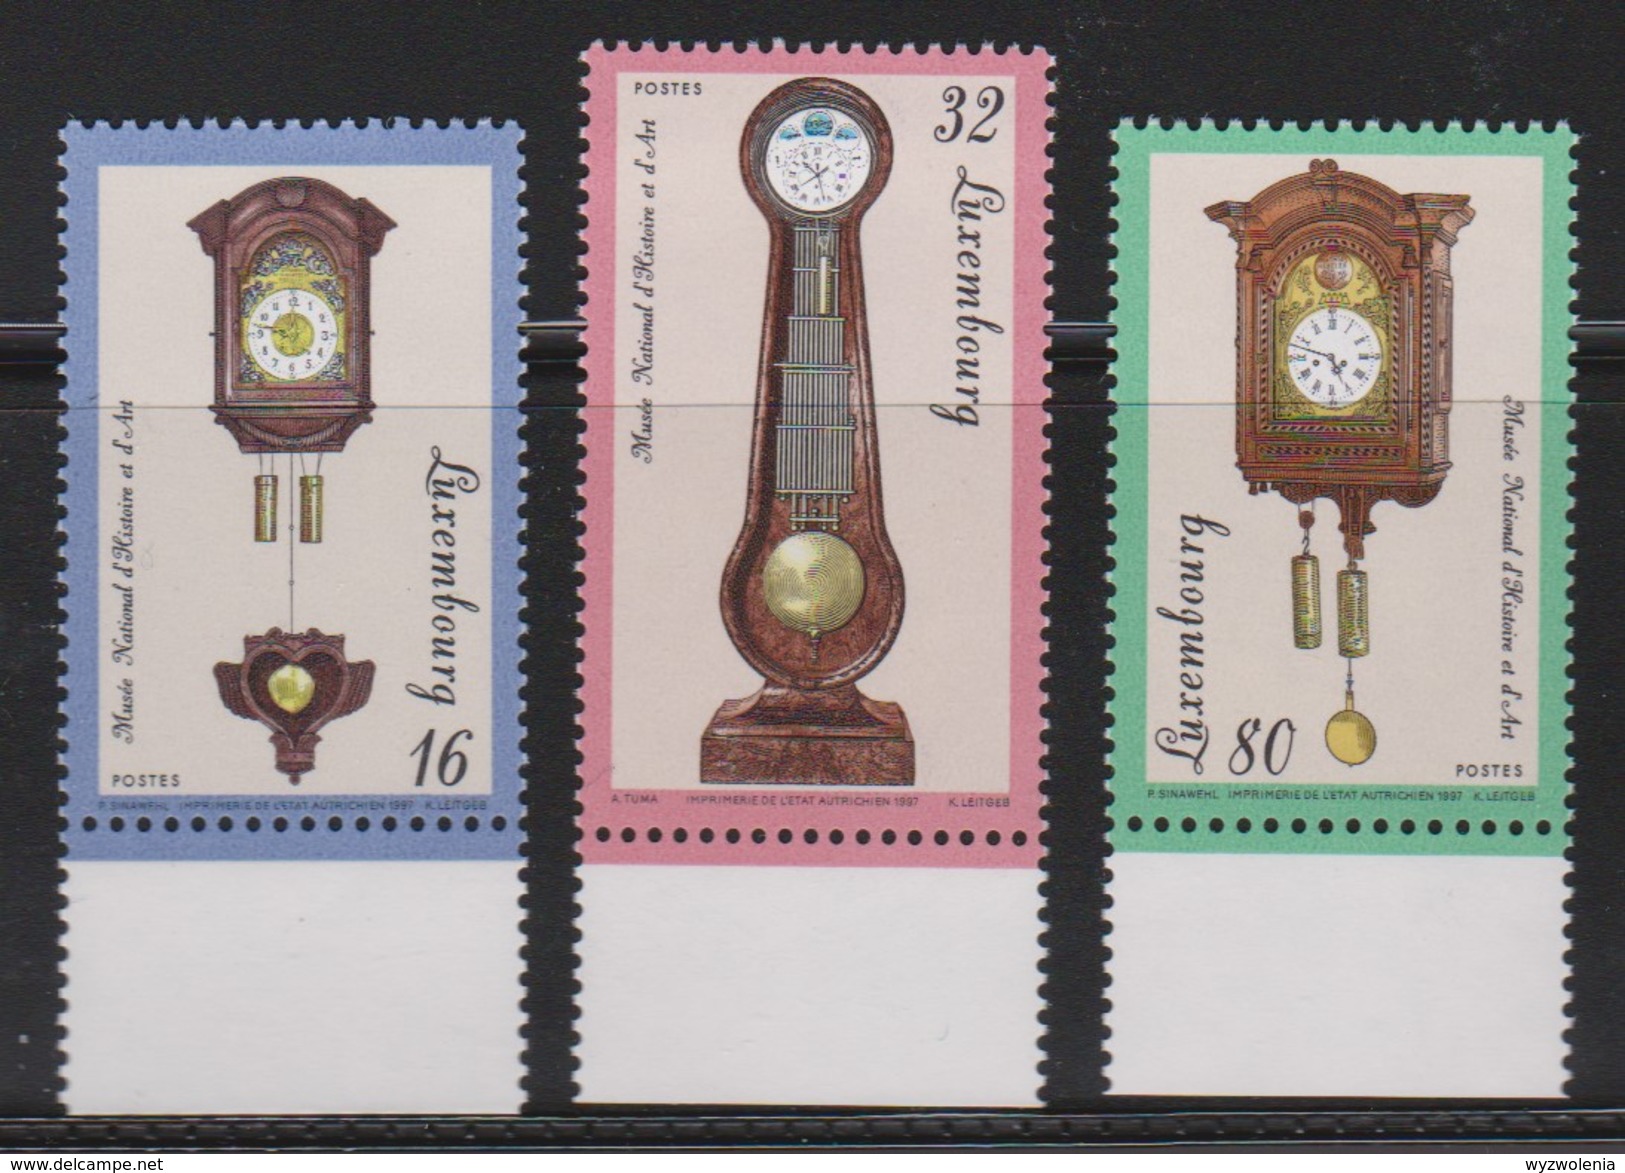 M 505) Luxemburg 1997 Mi# 4120-4122 **: Kappauer-Uhr, Astronomische Uhr, Kopfuhr - Uhrmacherei